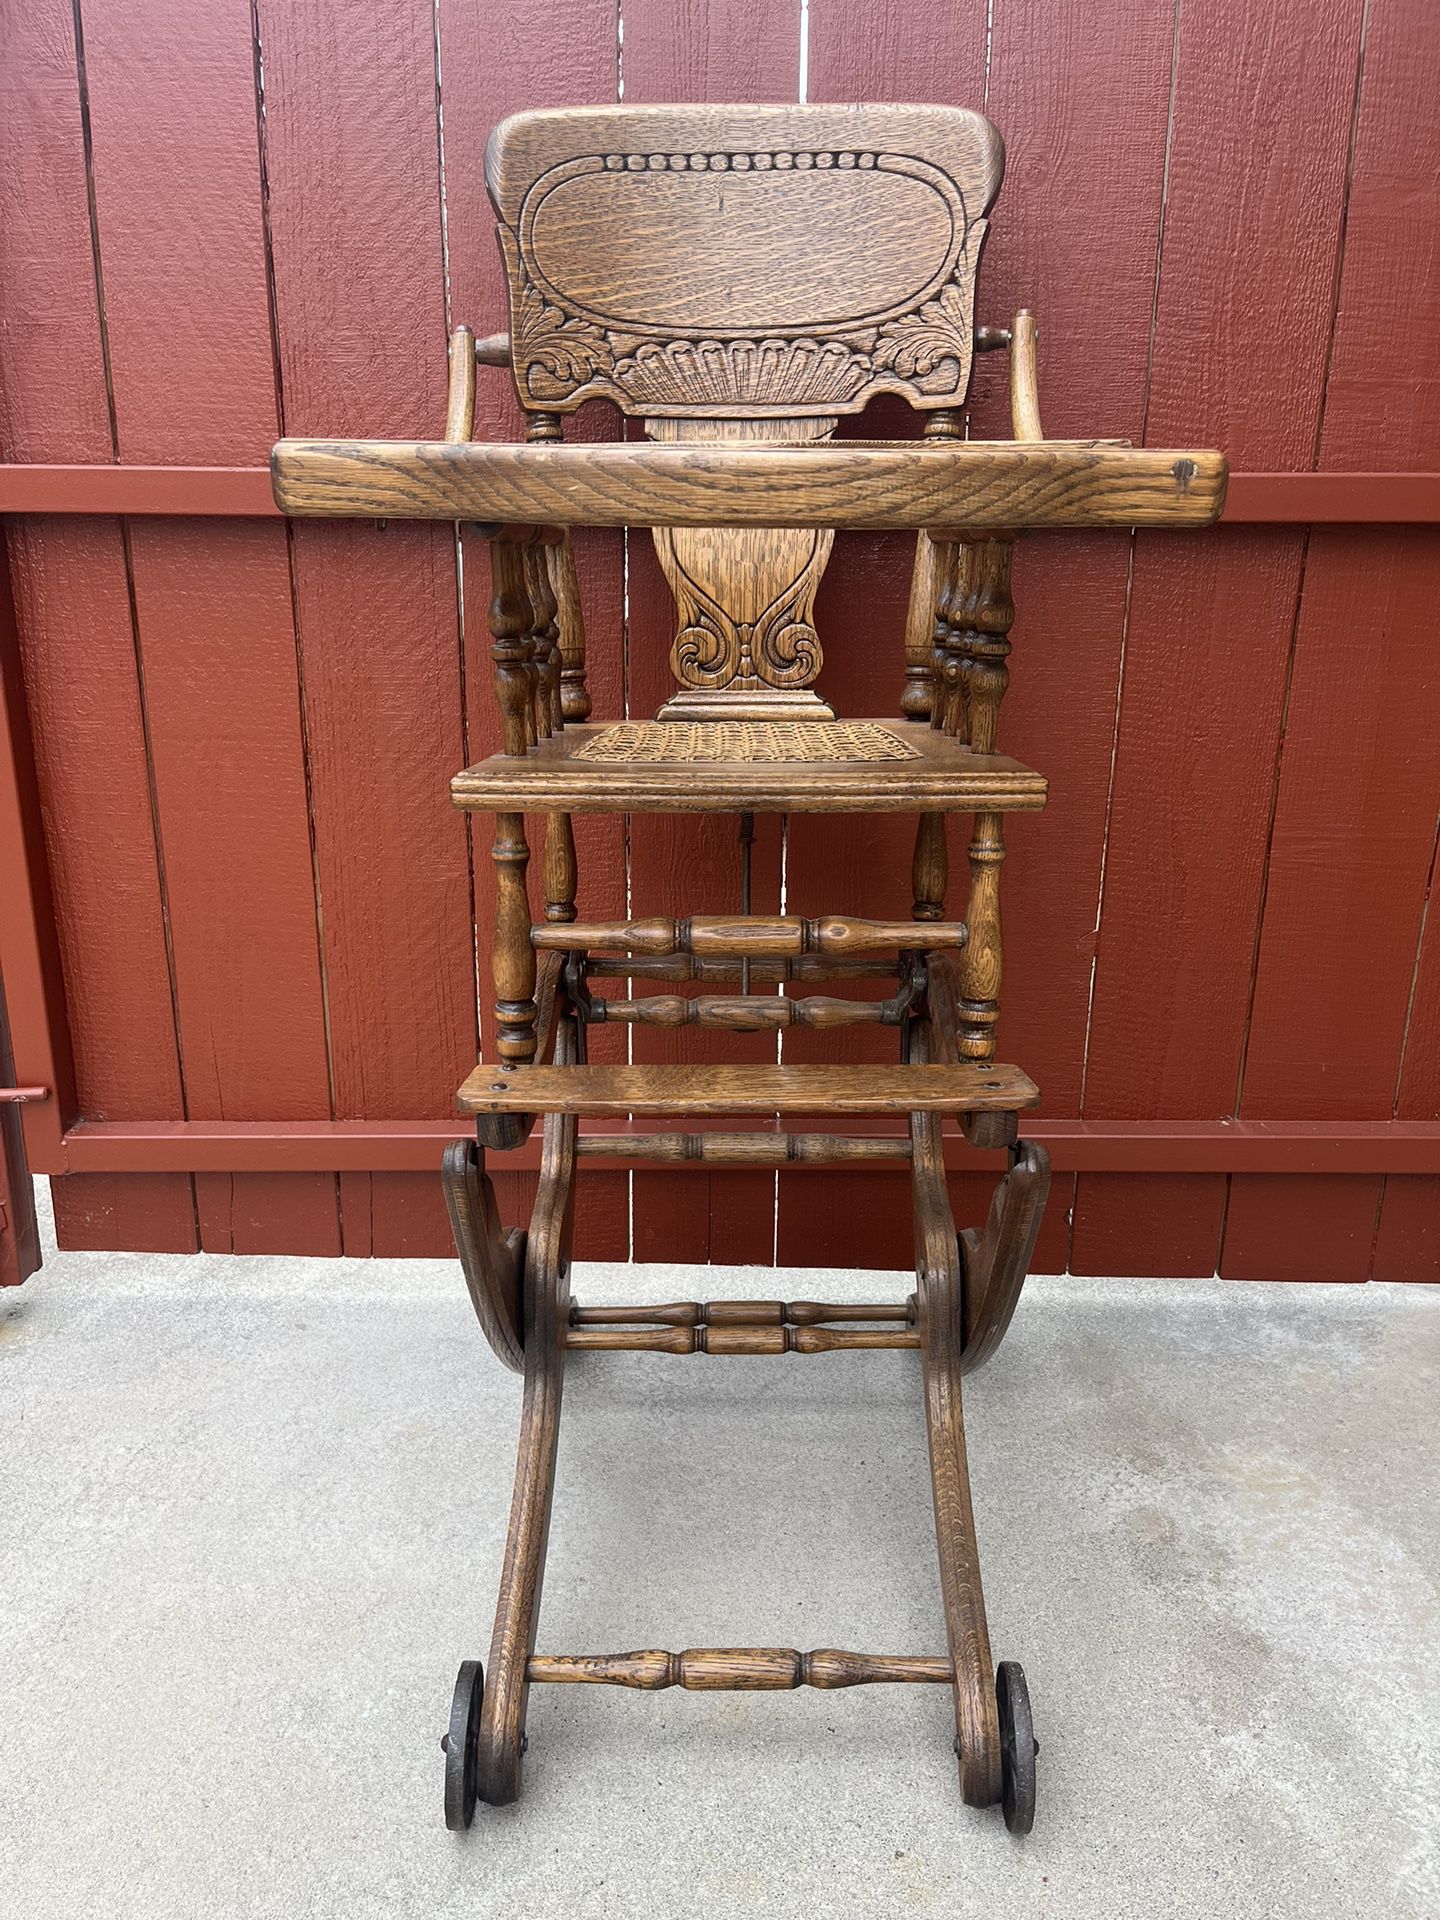 Antique High Chair/ Rocker